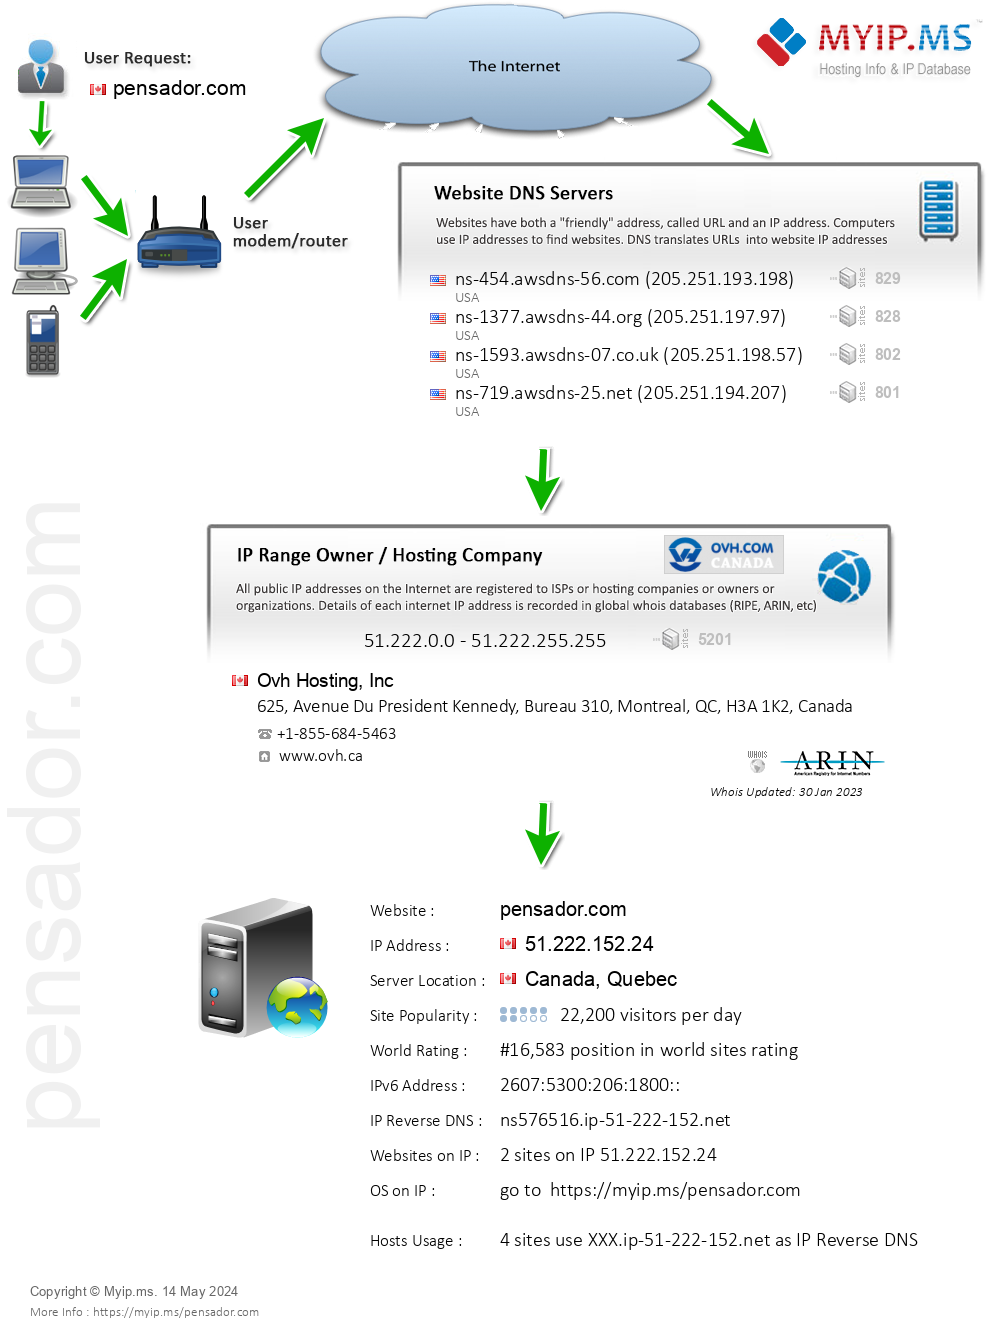 Pensador.com - Website Hosting Visual IP Diagram